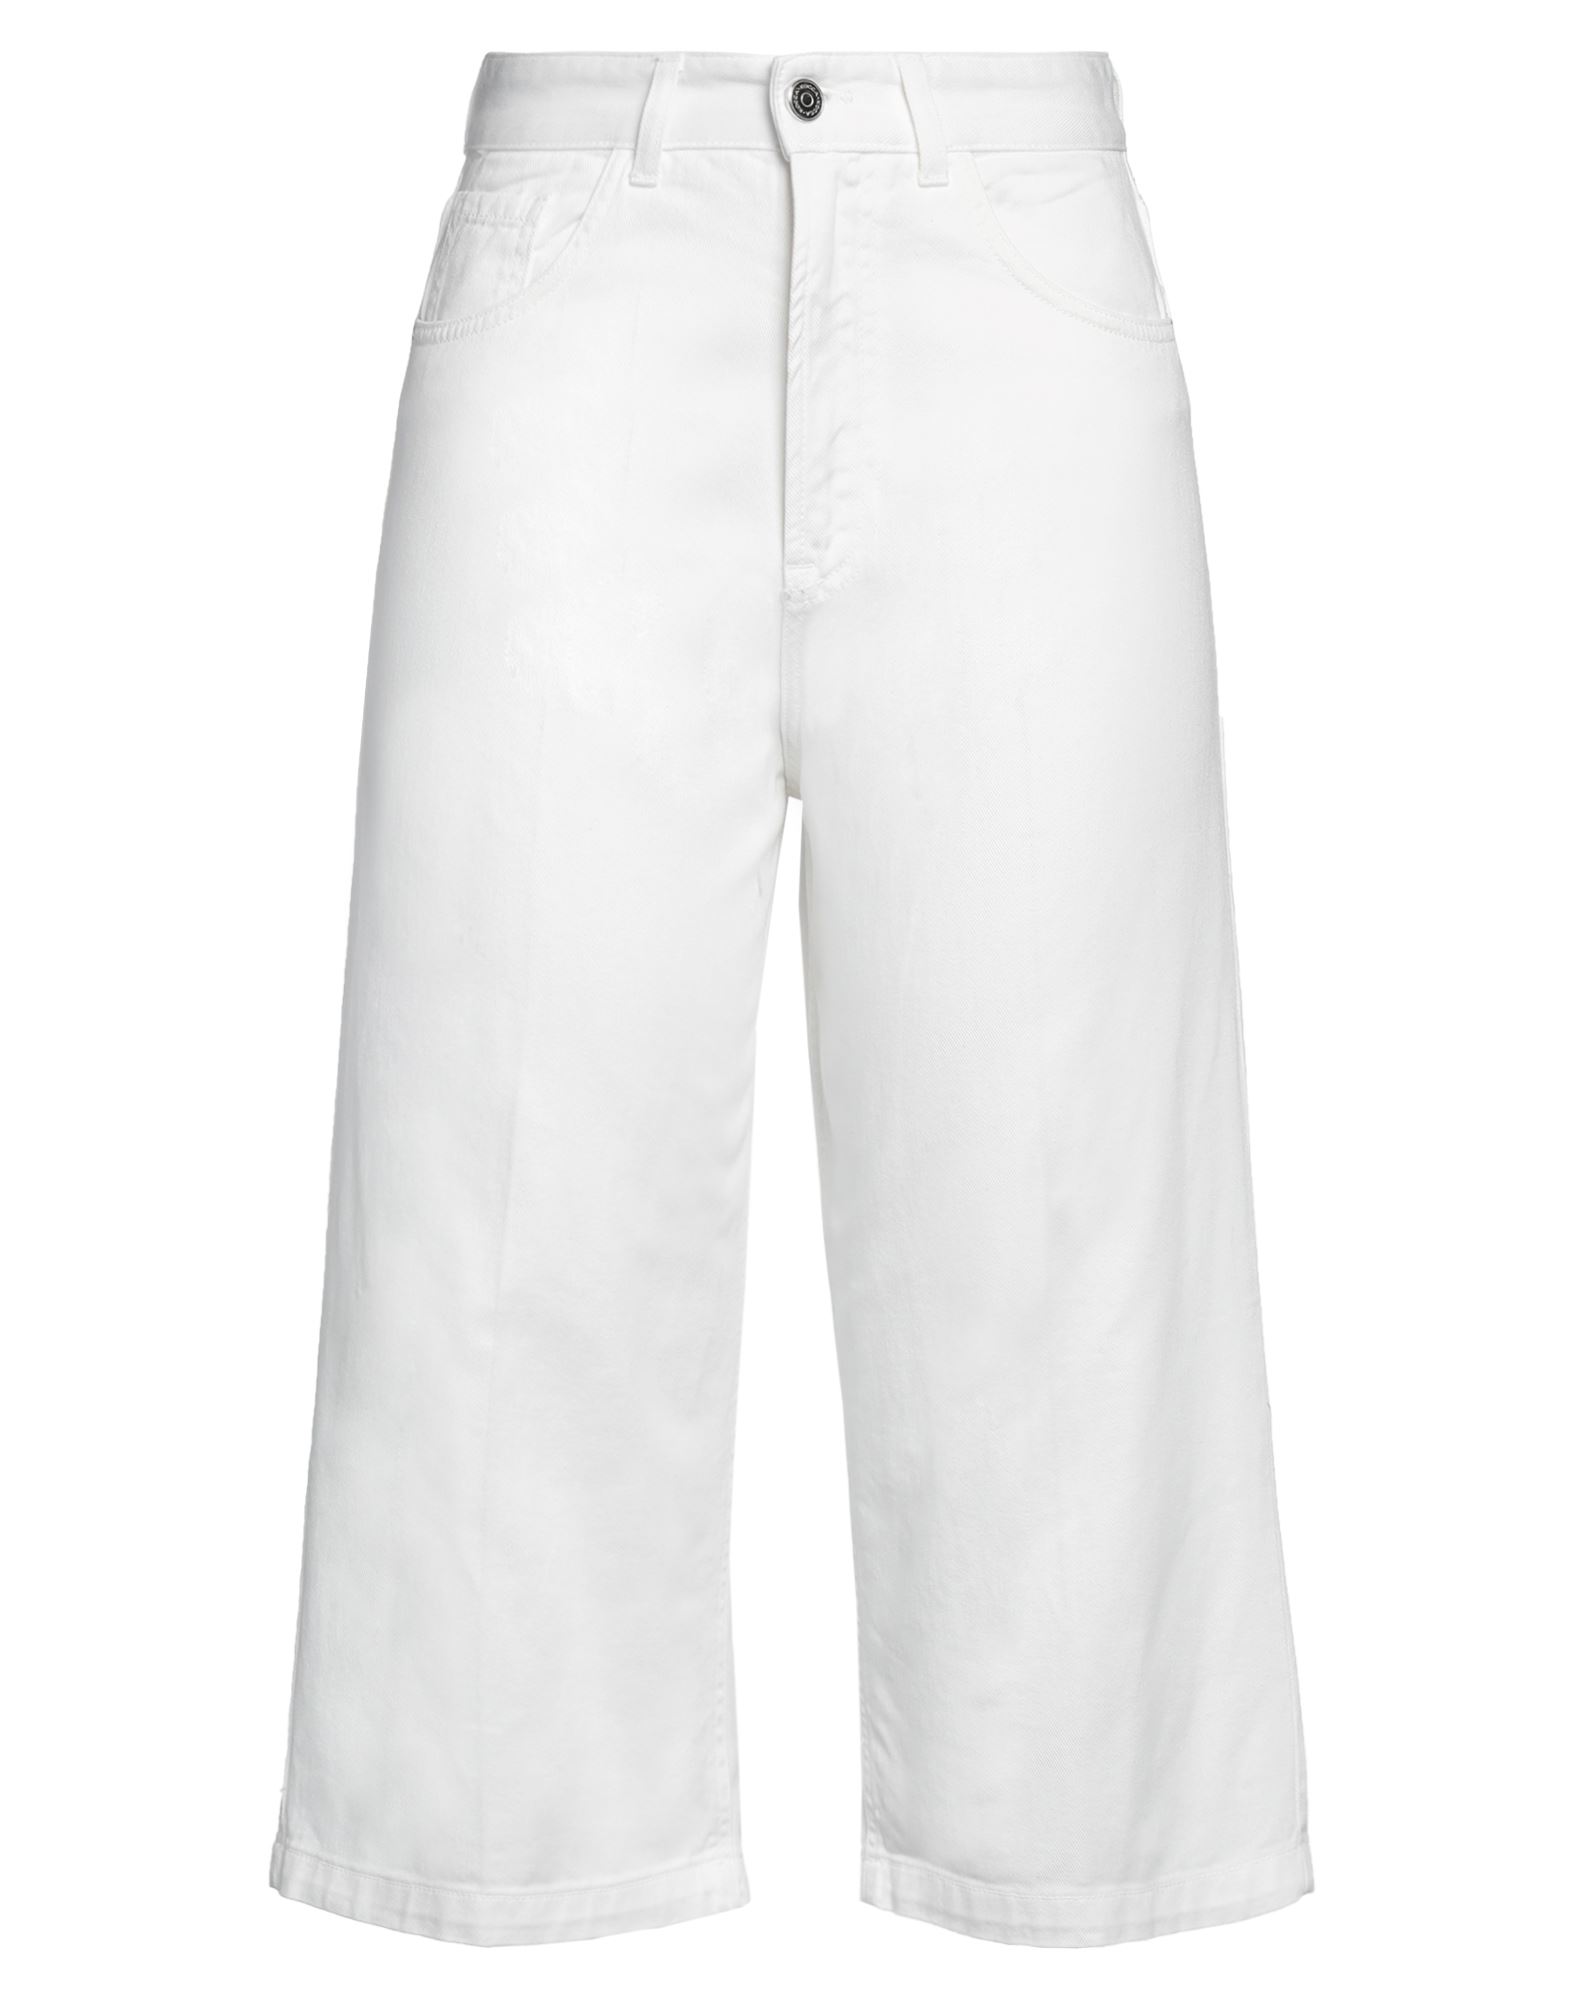 Shop Kocca Woman Pants White Size 32 Cotton